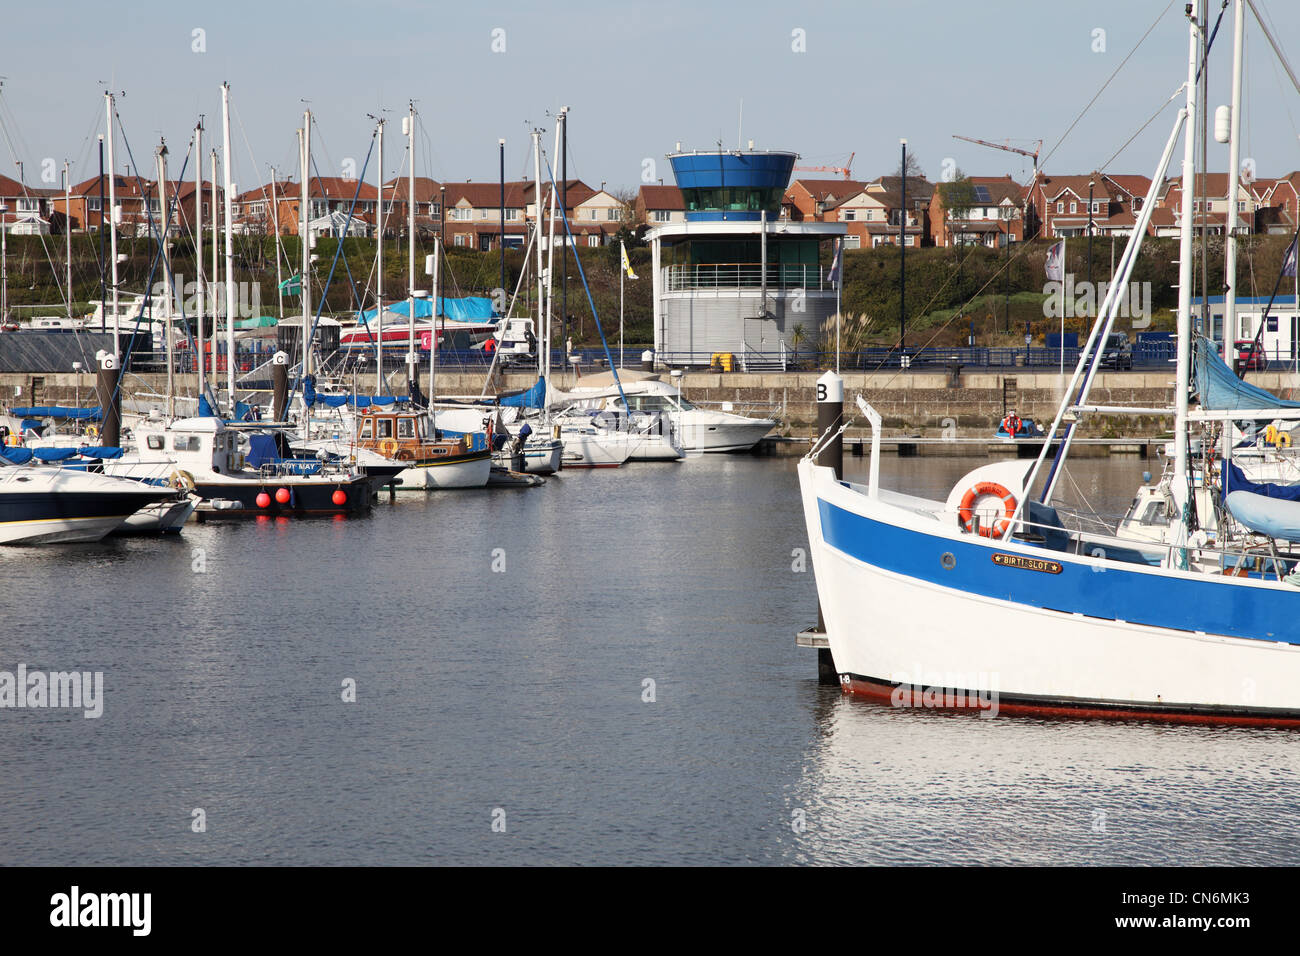 Boats moored within Royal Quays Marina, North Shields, NE England UK Stock Photo